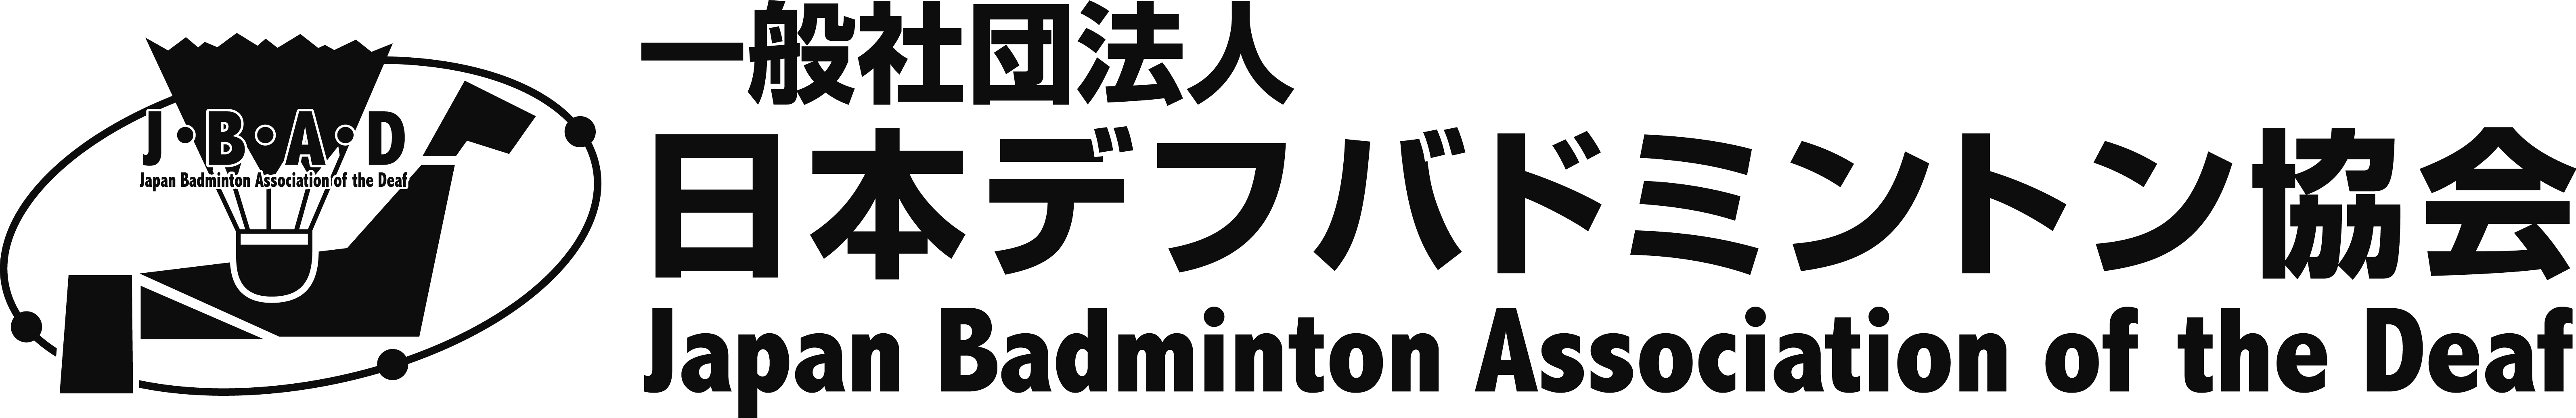 日本デフバドミントン協会